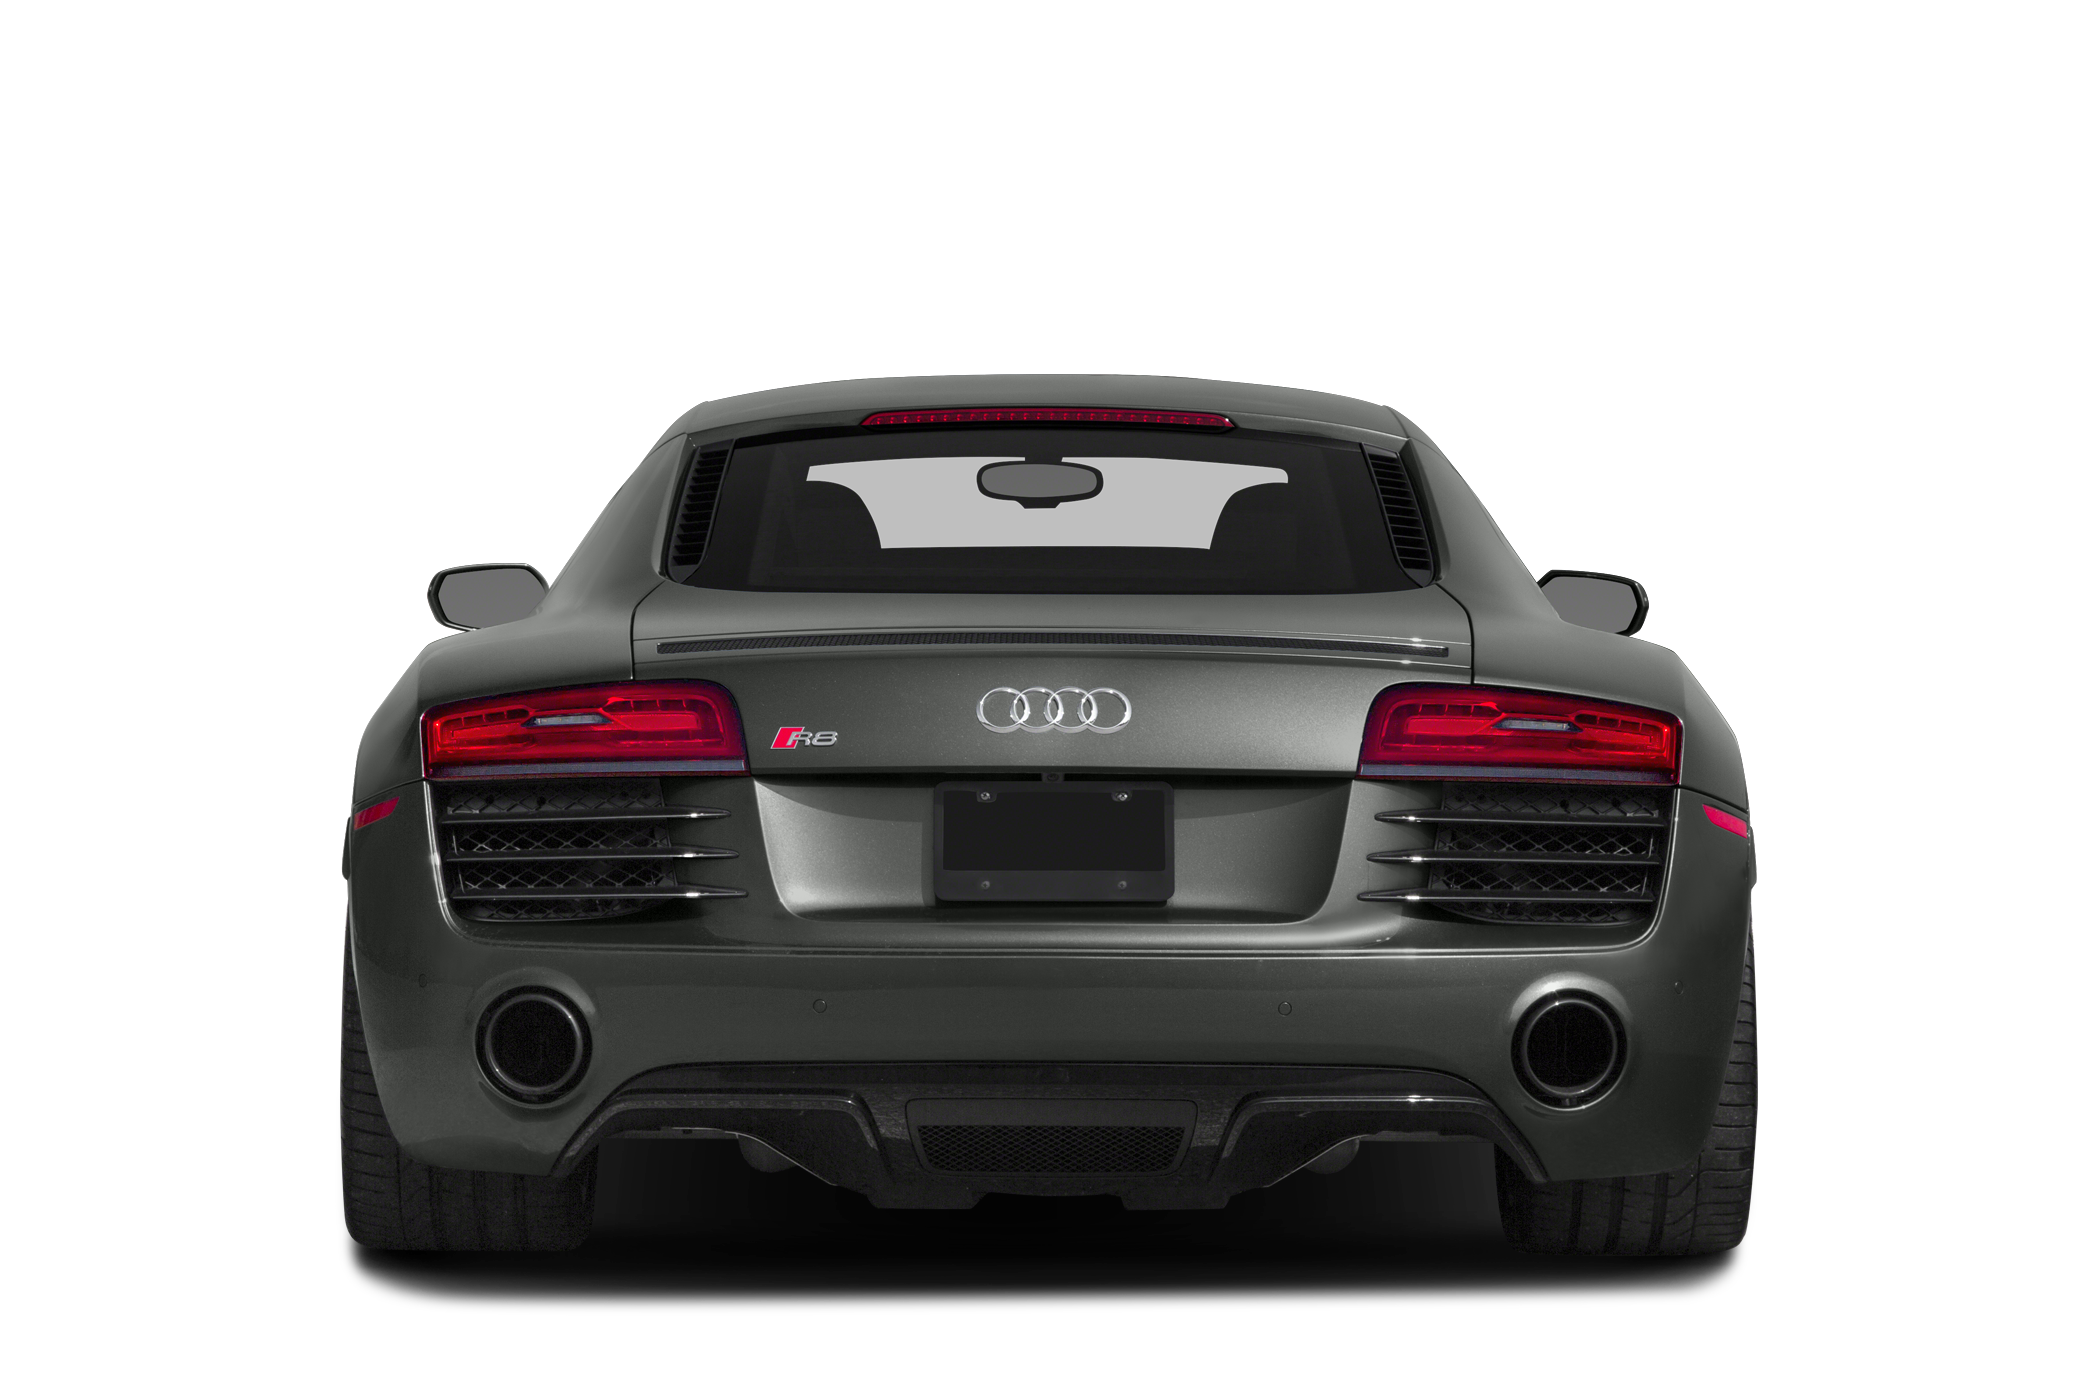 2014 Audi R8